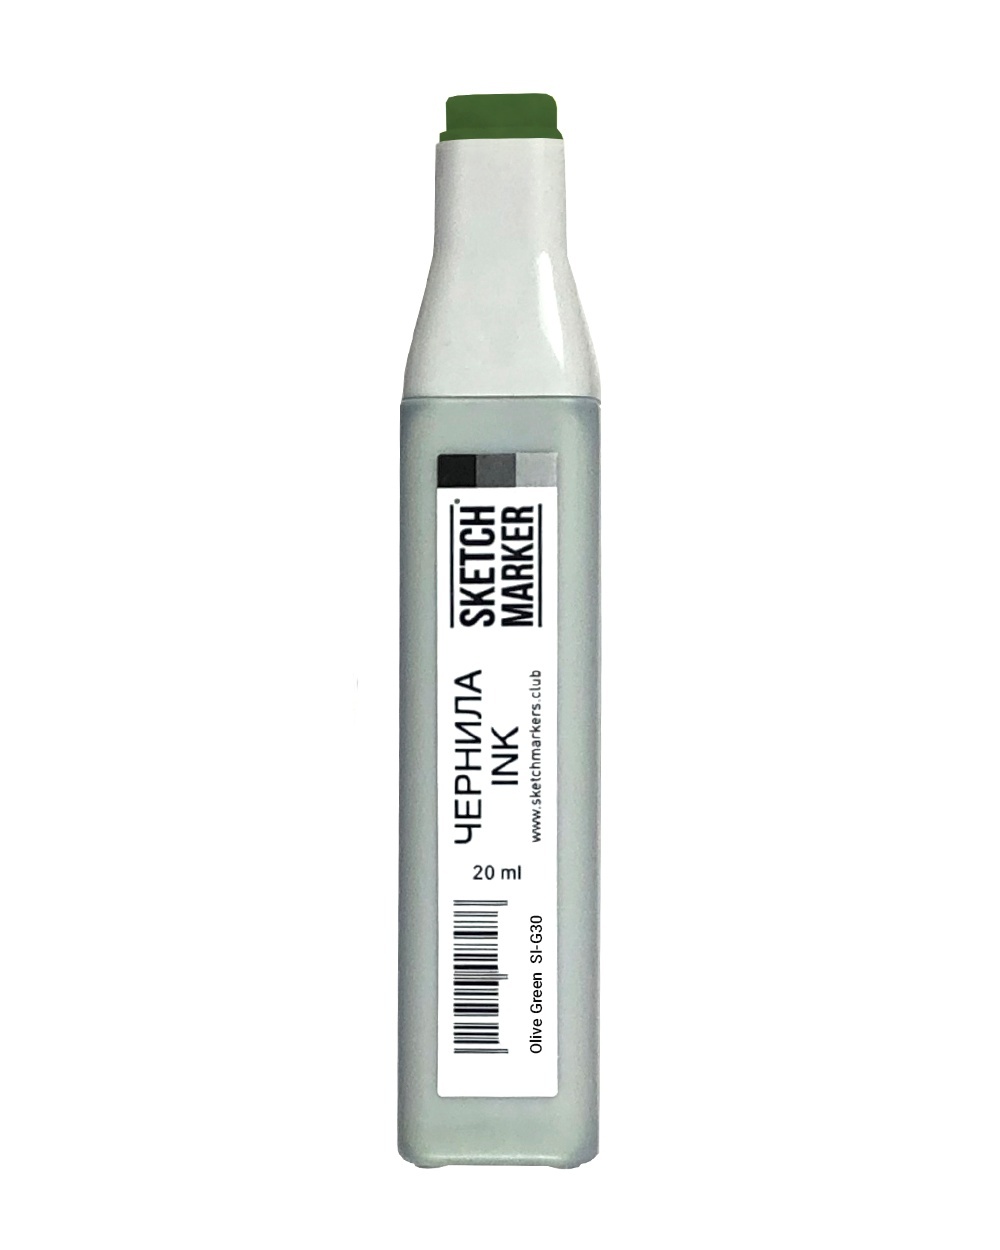 Чернила спиртовые для маркеров SKETCHMARKER 20мл цвет G30 Оливковый зеленый